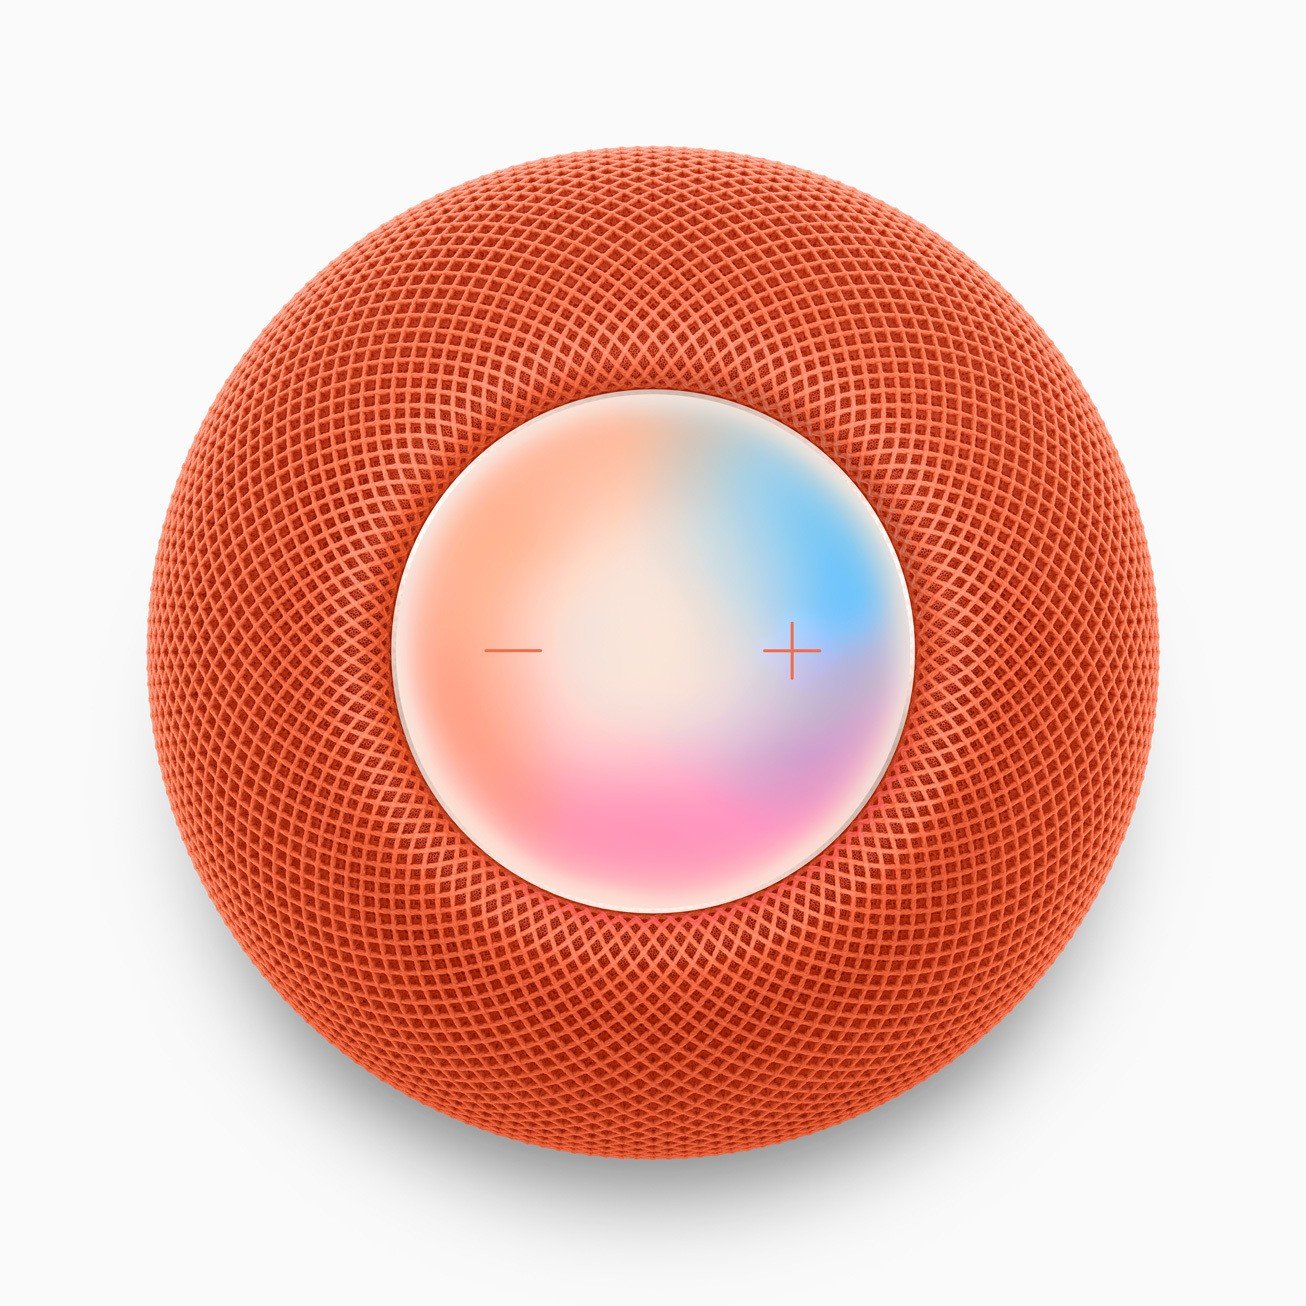 Image of Apple's HomePod smart speaker